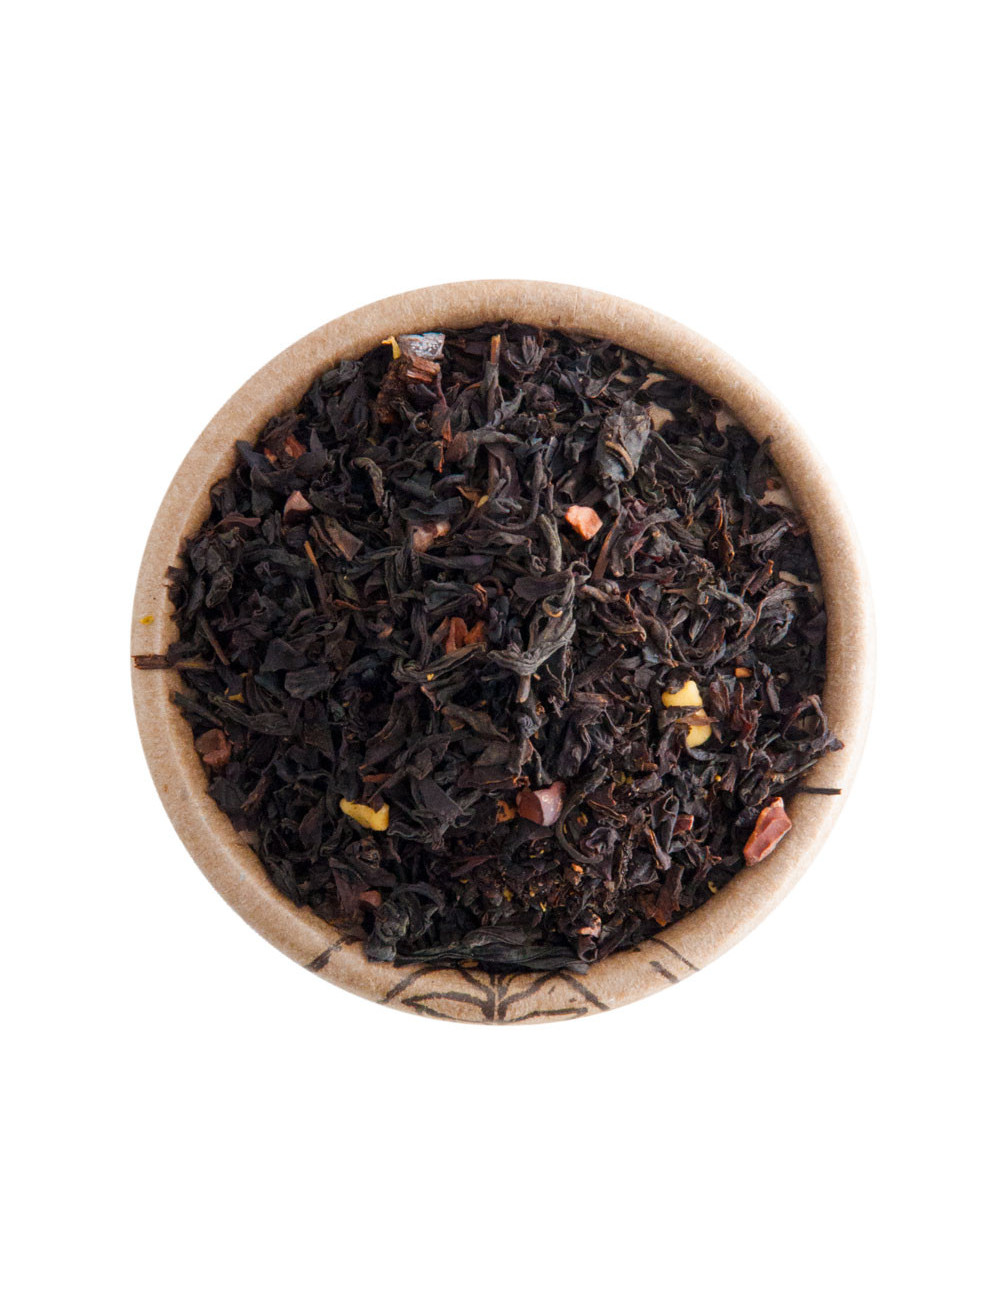 Cioccolato tè nero aromatizzato - La Pianta del Tè shop online